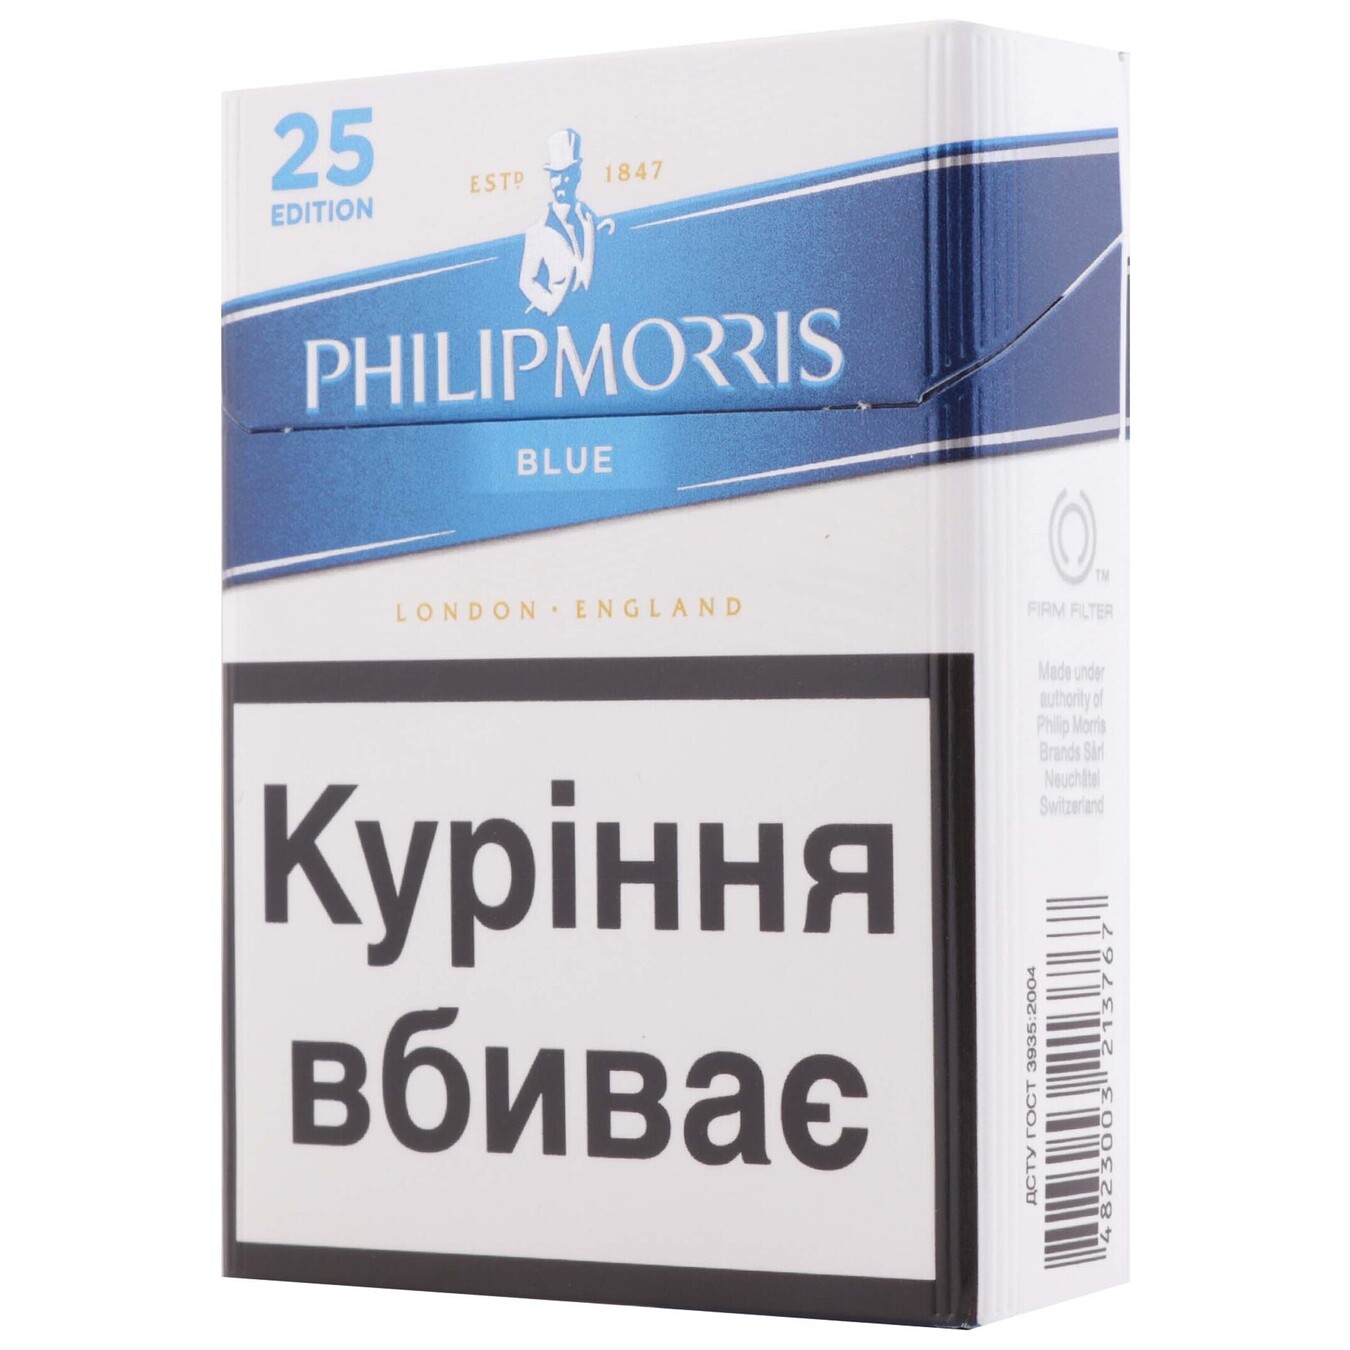 Сигареты Philip Morris Blue 25 Edition 25шт (цена указана без акциза) 2